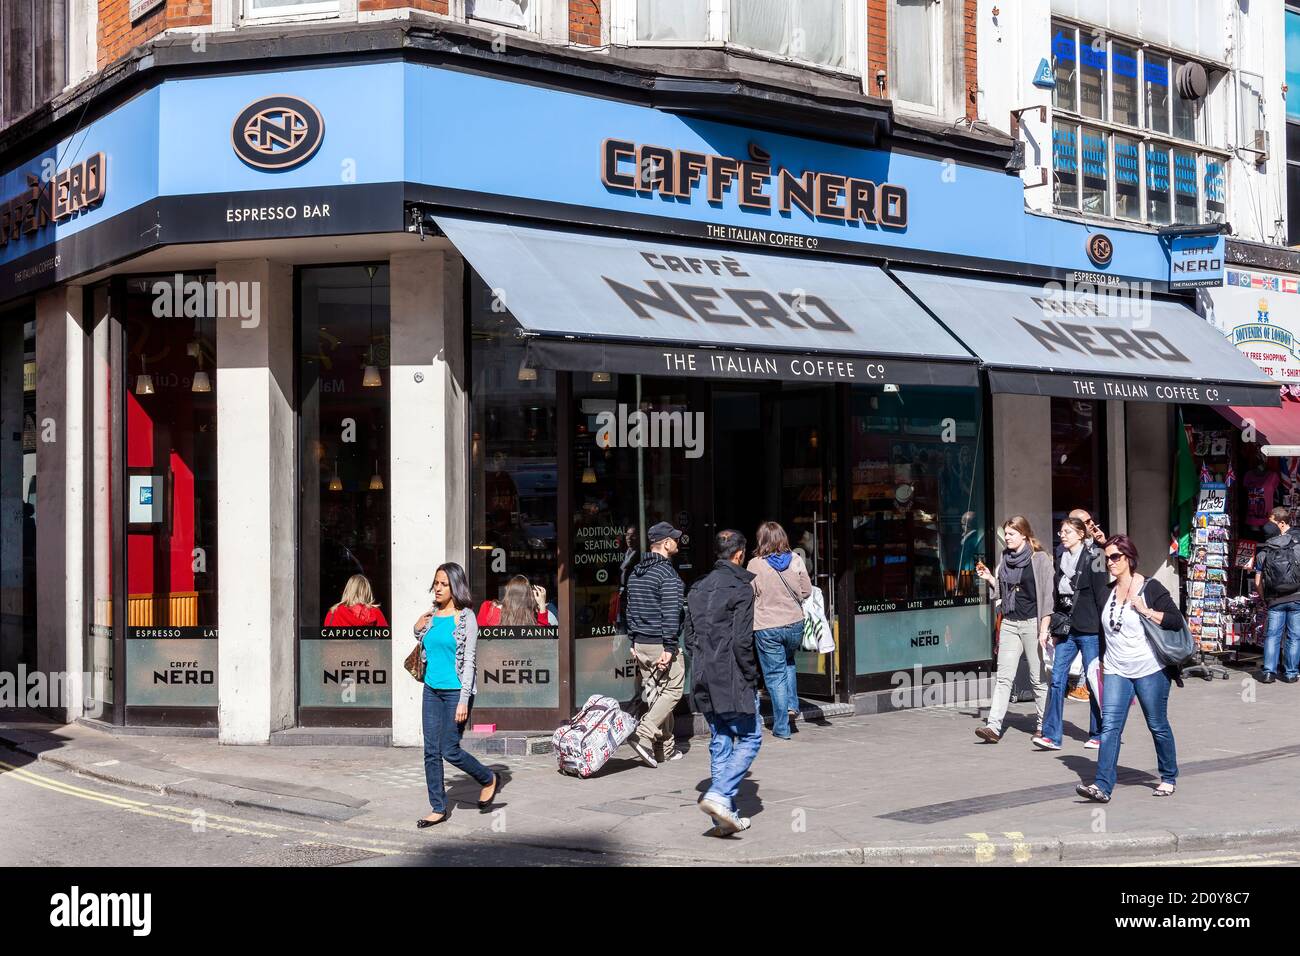 London, UK, April 1, 2012 : Caffe Nero Logo Werbeschild hängend vor einem Kaffeehaus Einzelhandel Business-Restaurant in der Innenstadt Stock Foto Stockfoto